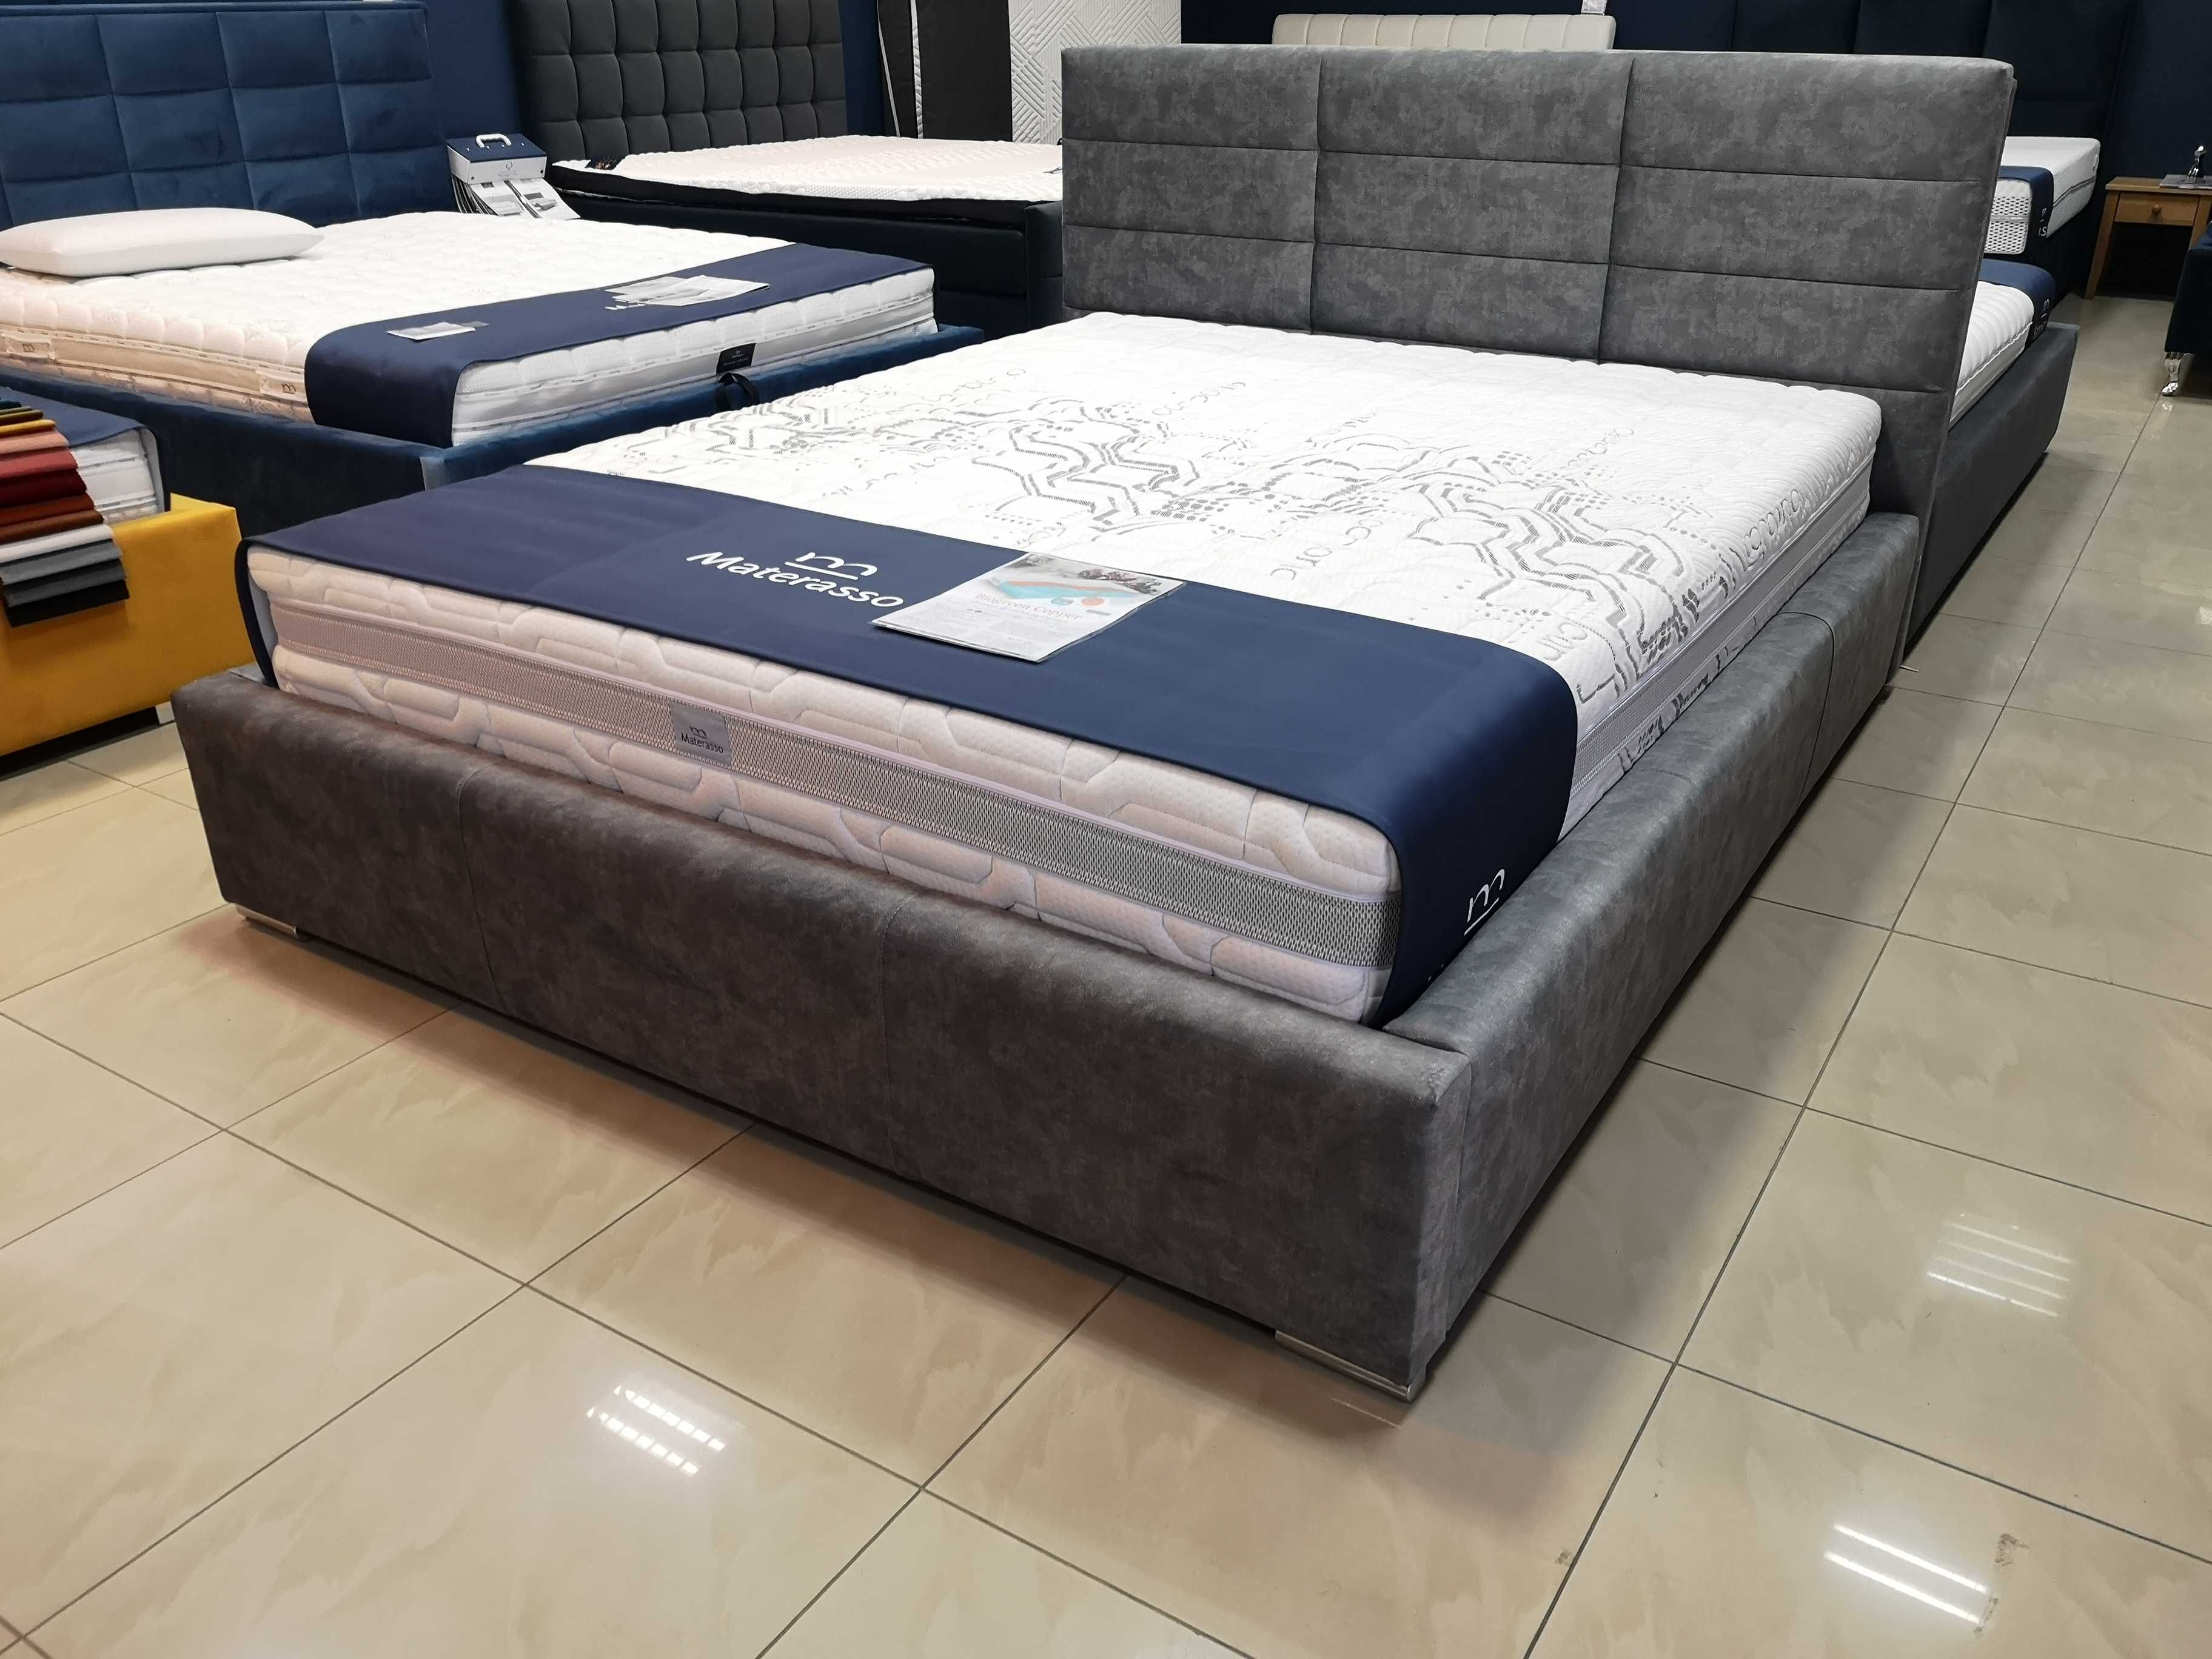 Łóżko Mars 160x200 łóżko tapicerpwane Łóżka na wymiar